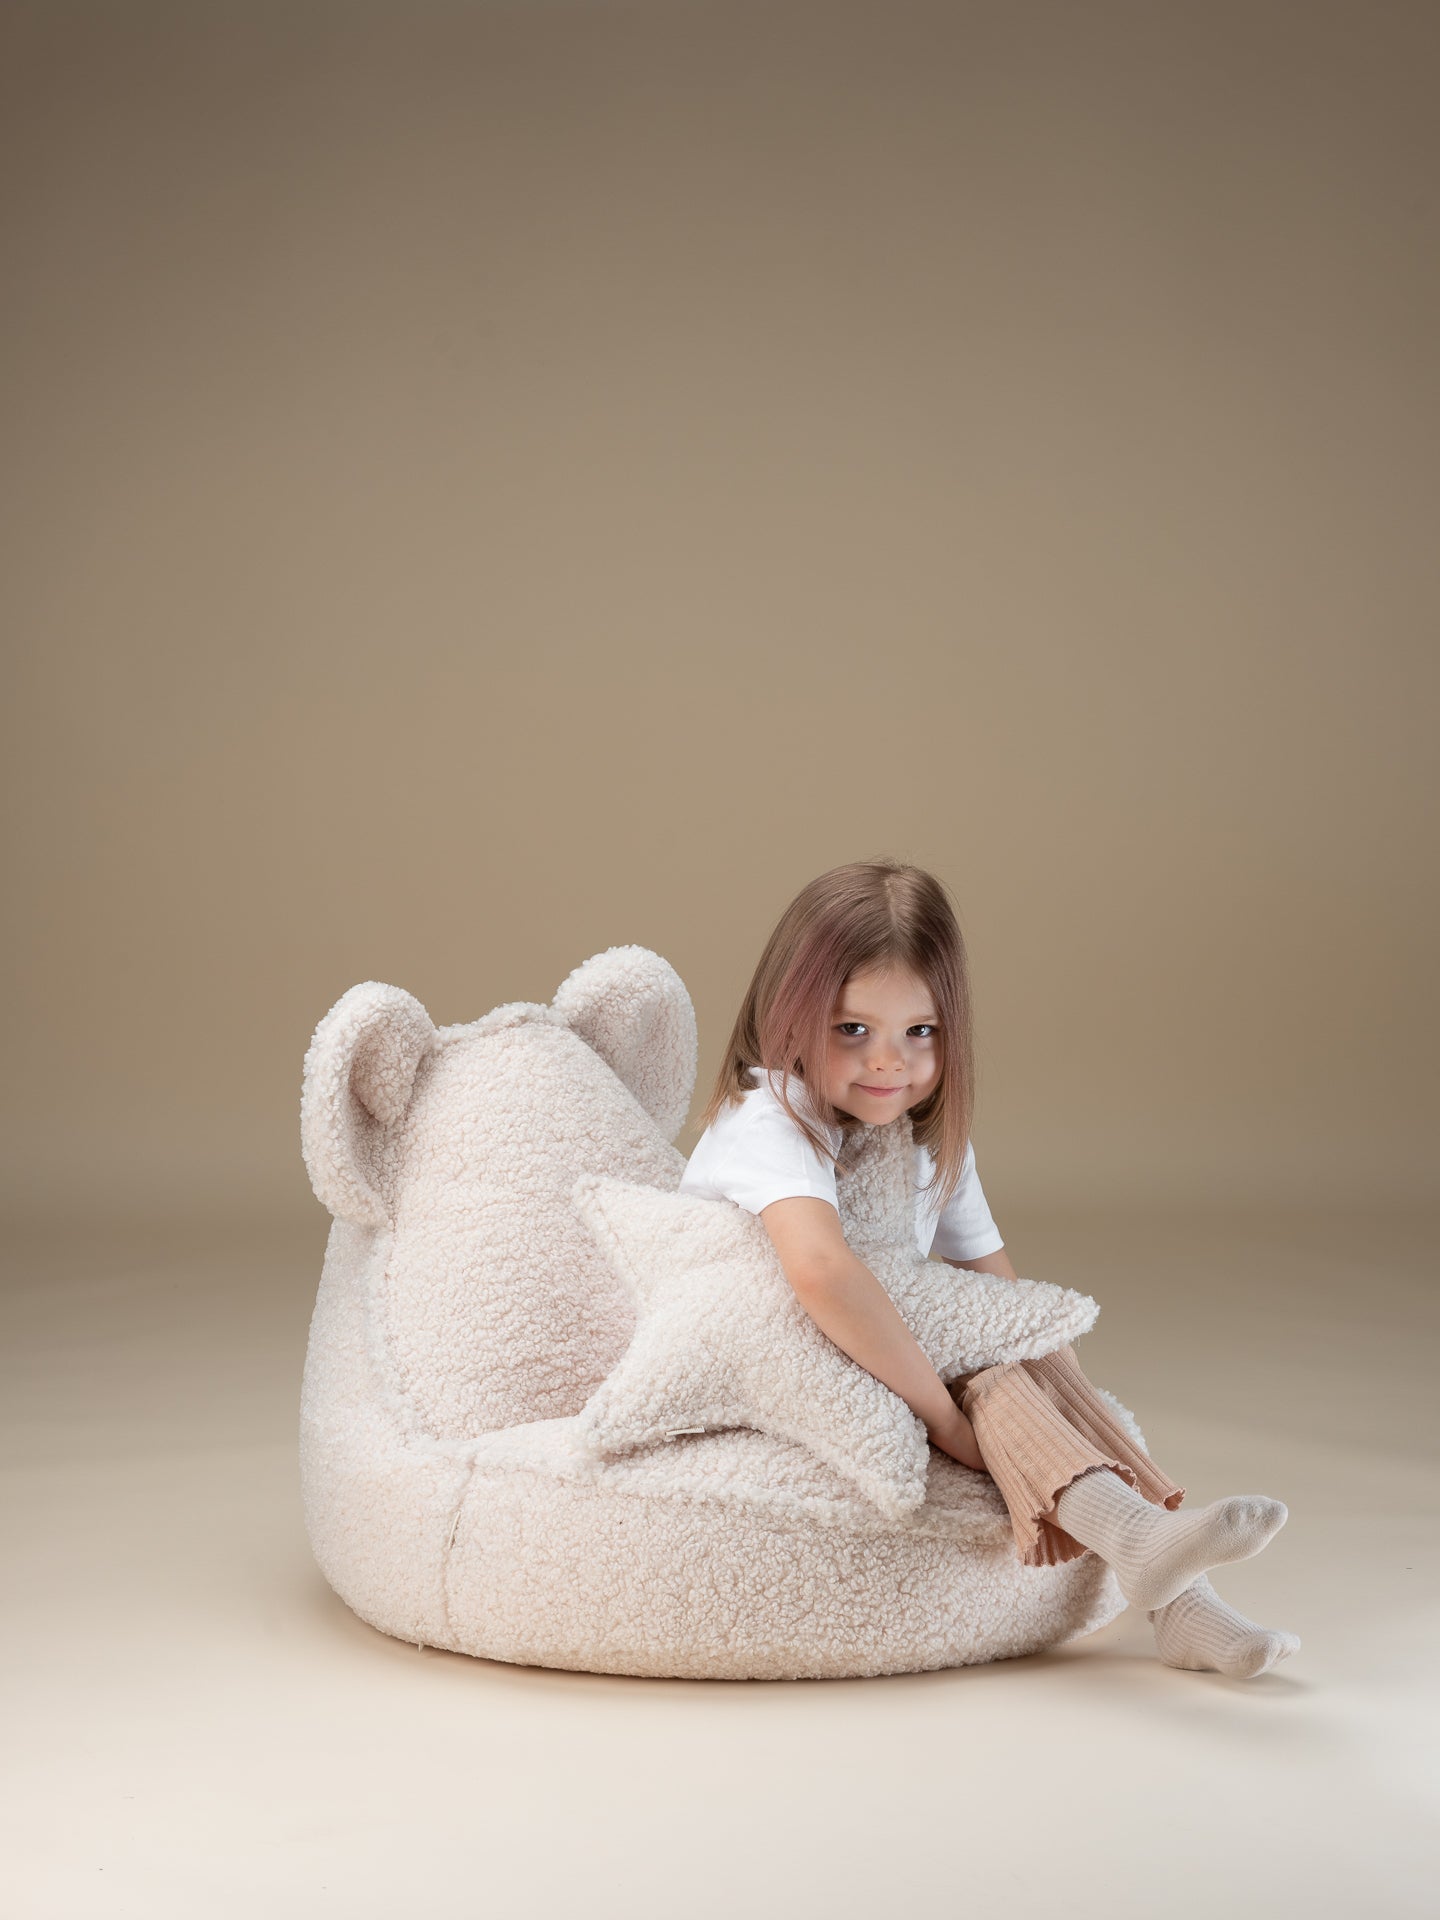 Fauteuil confortable pour enfant, en forme d'ourson avec oreilles. Moumoute blanc. Existe aussi dans d'autres couleurs : marron érable, beige biscuit. Idéal dès 3 ans.